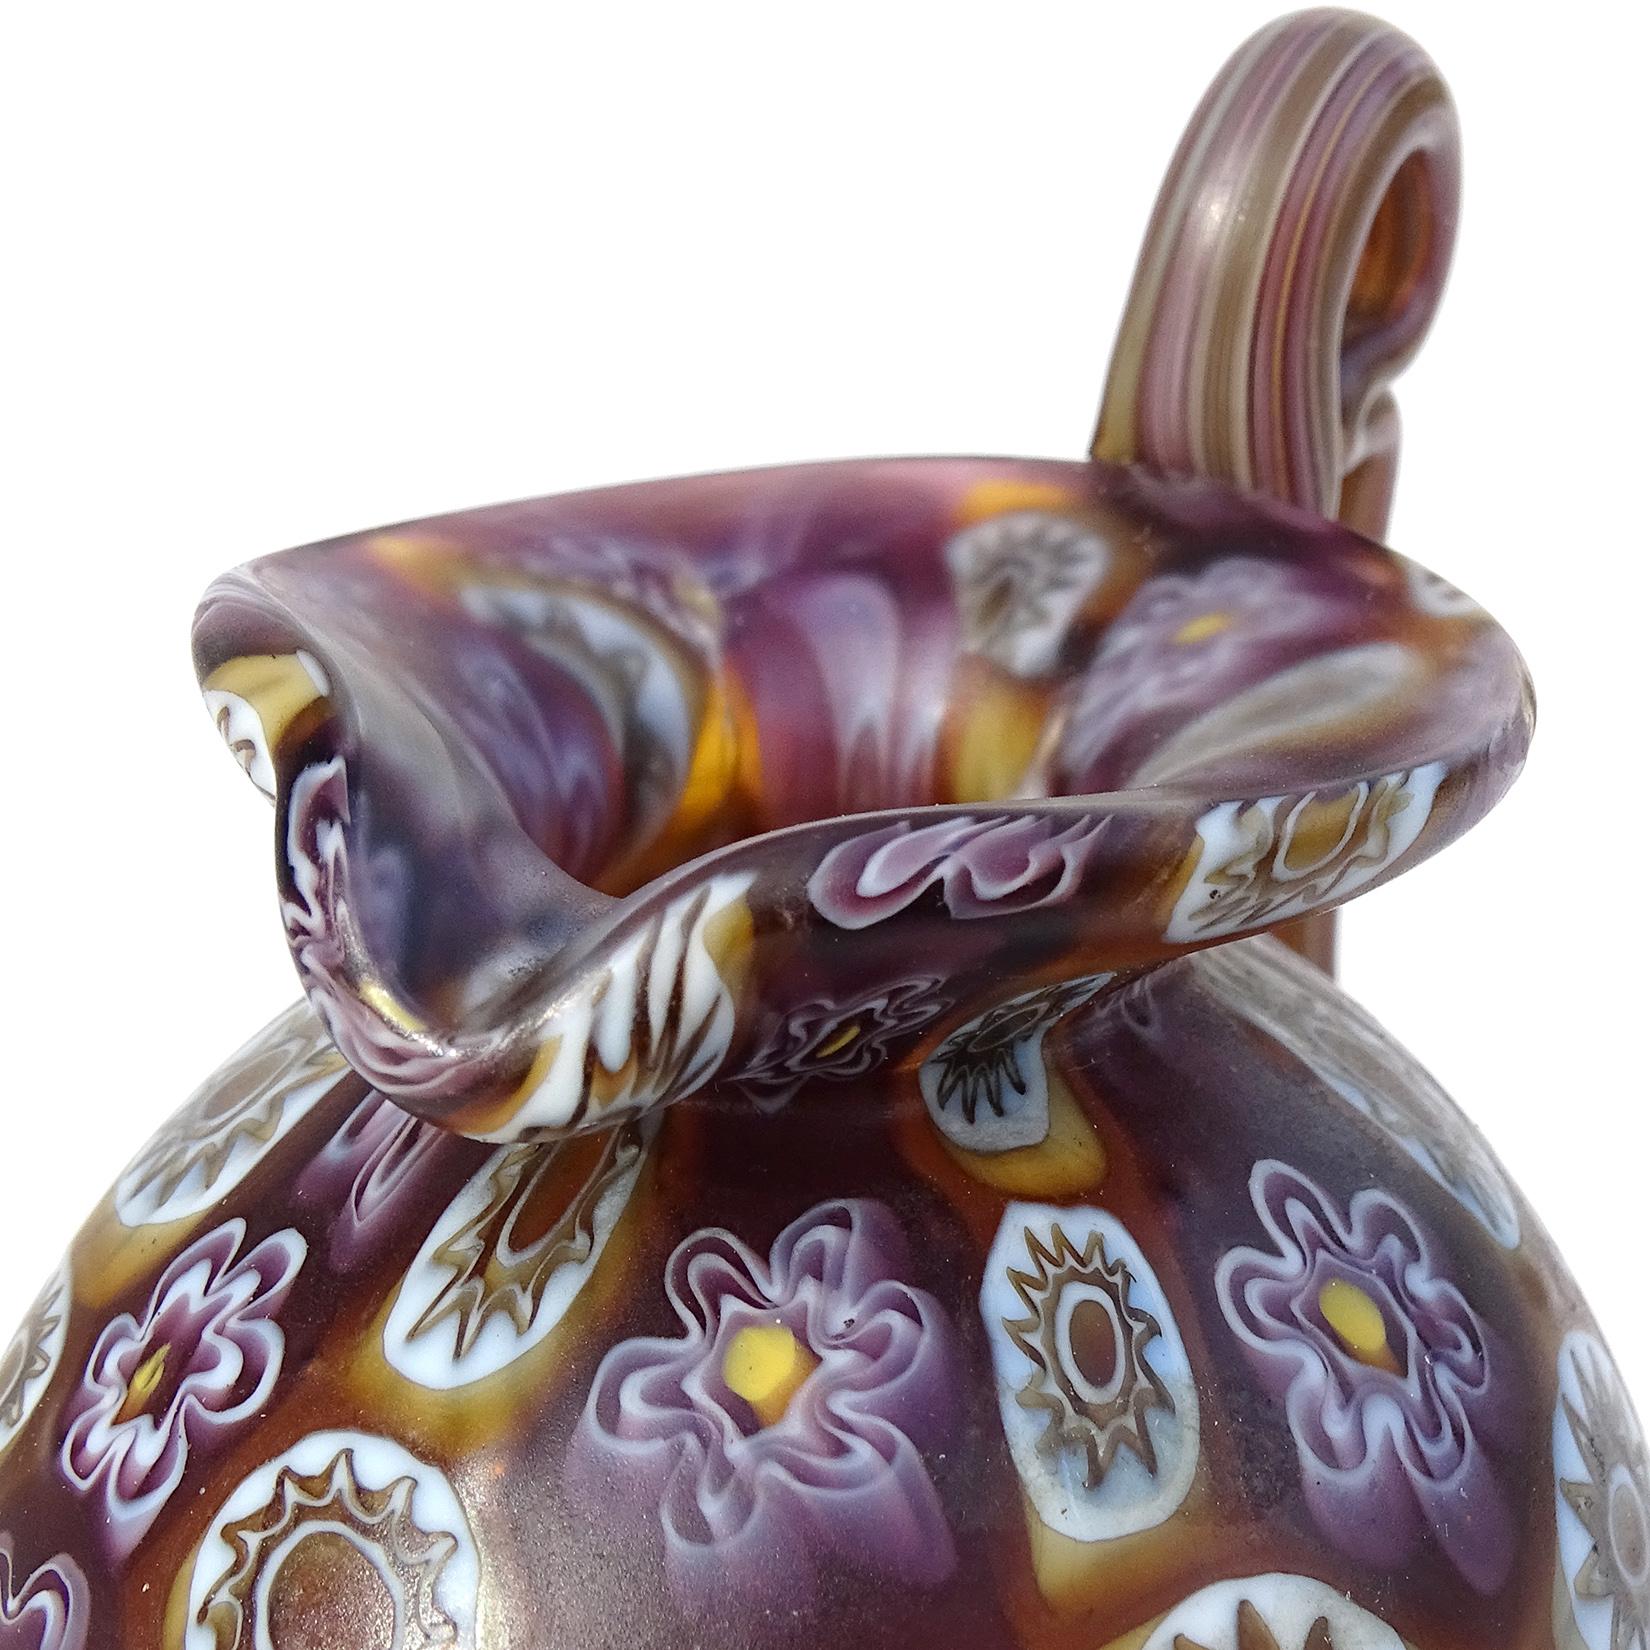 Schöne antike Murano mundgeblasen Millefiori Murrina Blume Mosaik italienische Kunst Glas dekorative verzierten Griff Schrank Vase / Krug. Dokumentiert für die Firma Fratelli Toso, ca. 1900-1920. Die Vase hat ein frühes Design und eine frühe